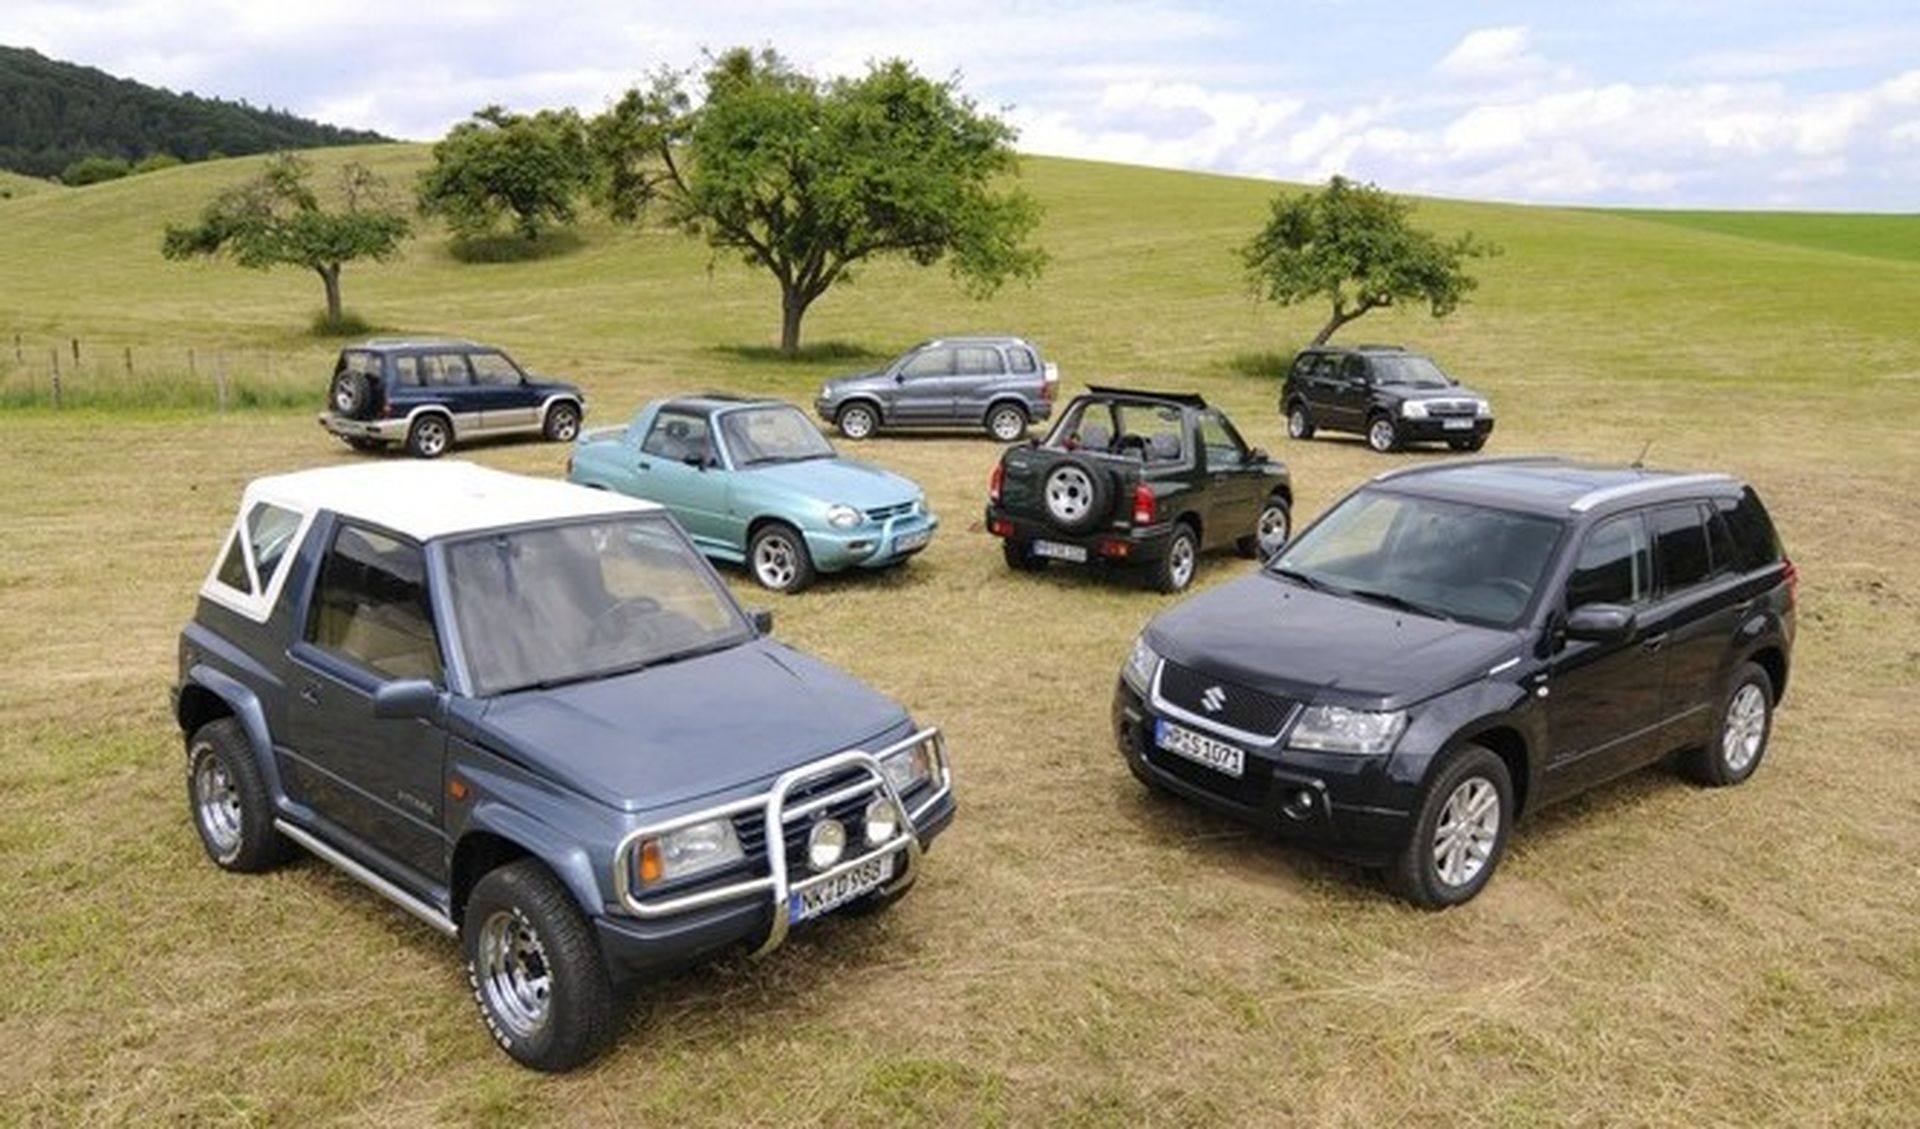 Treinta años para el Suzuki Vitara